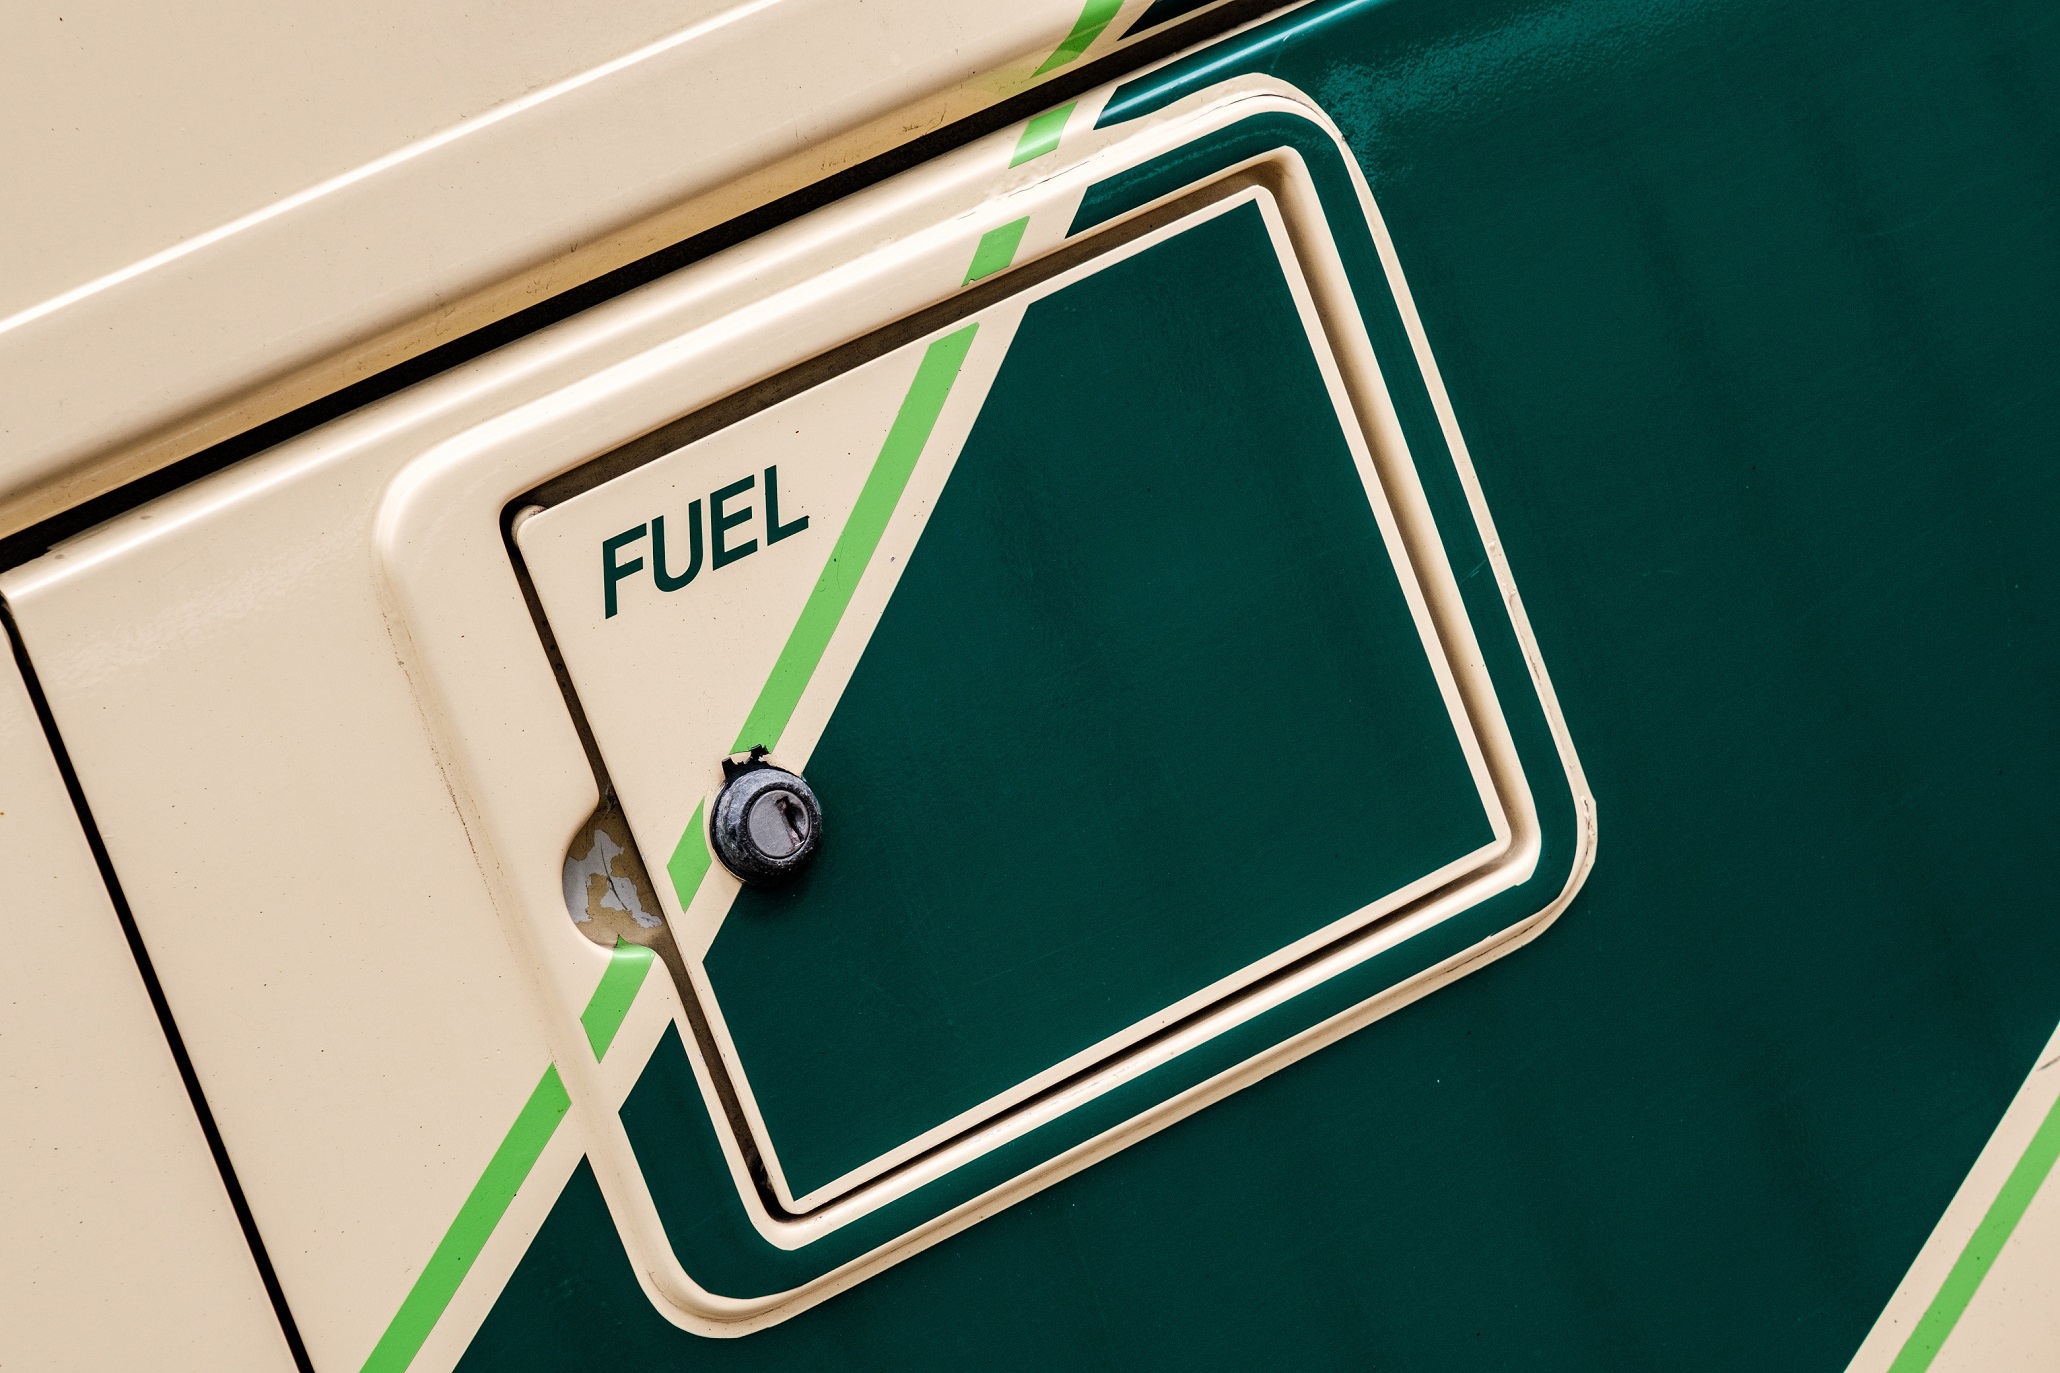 Bulk diesel average price increases in October